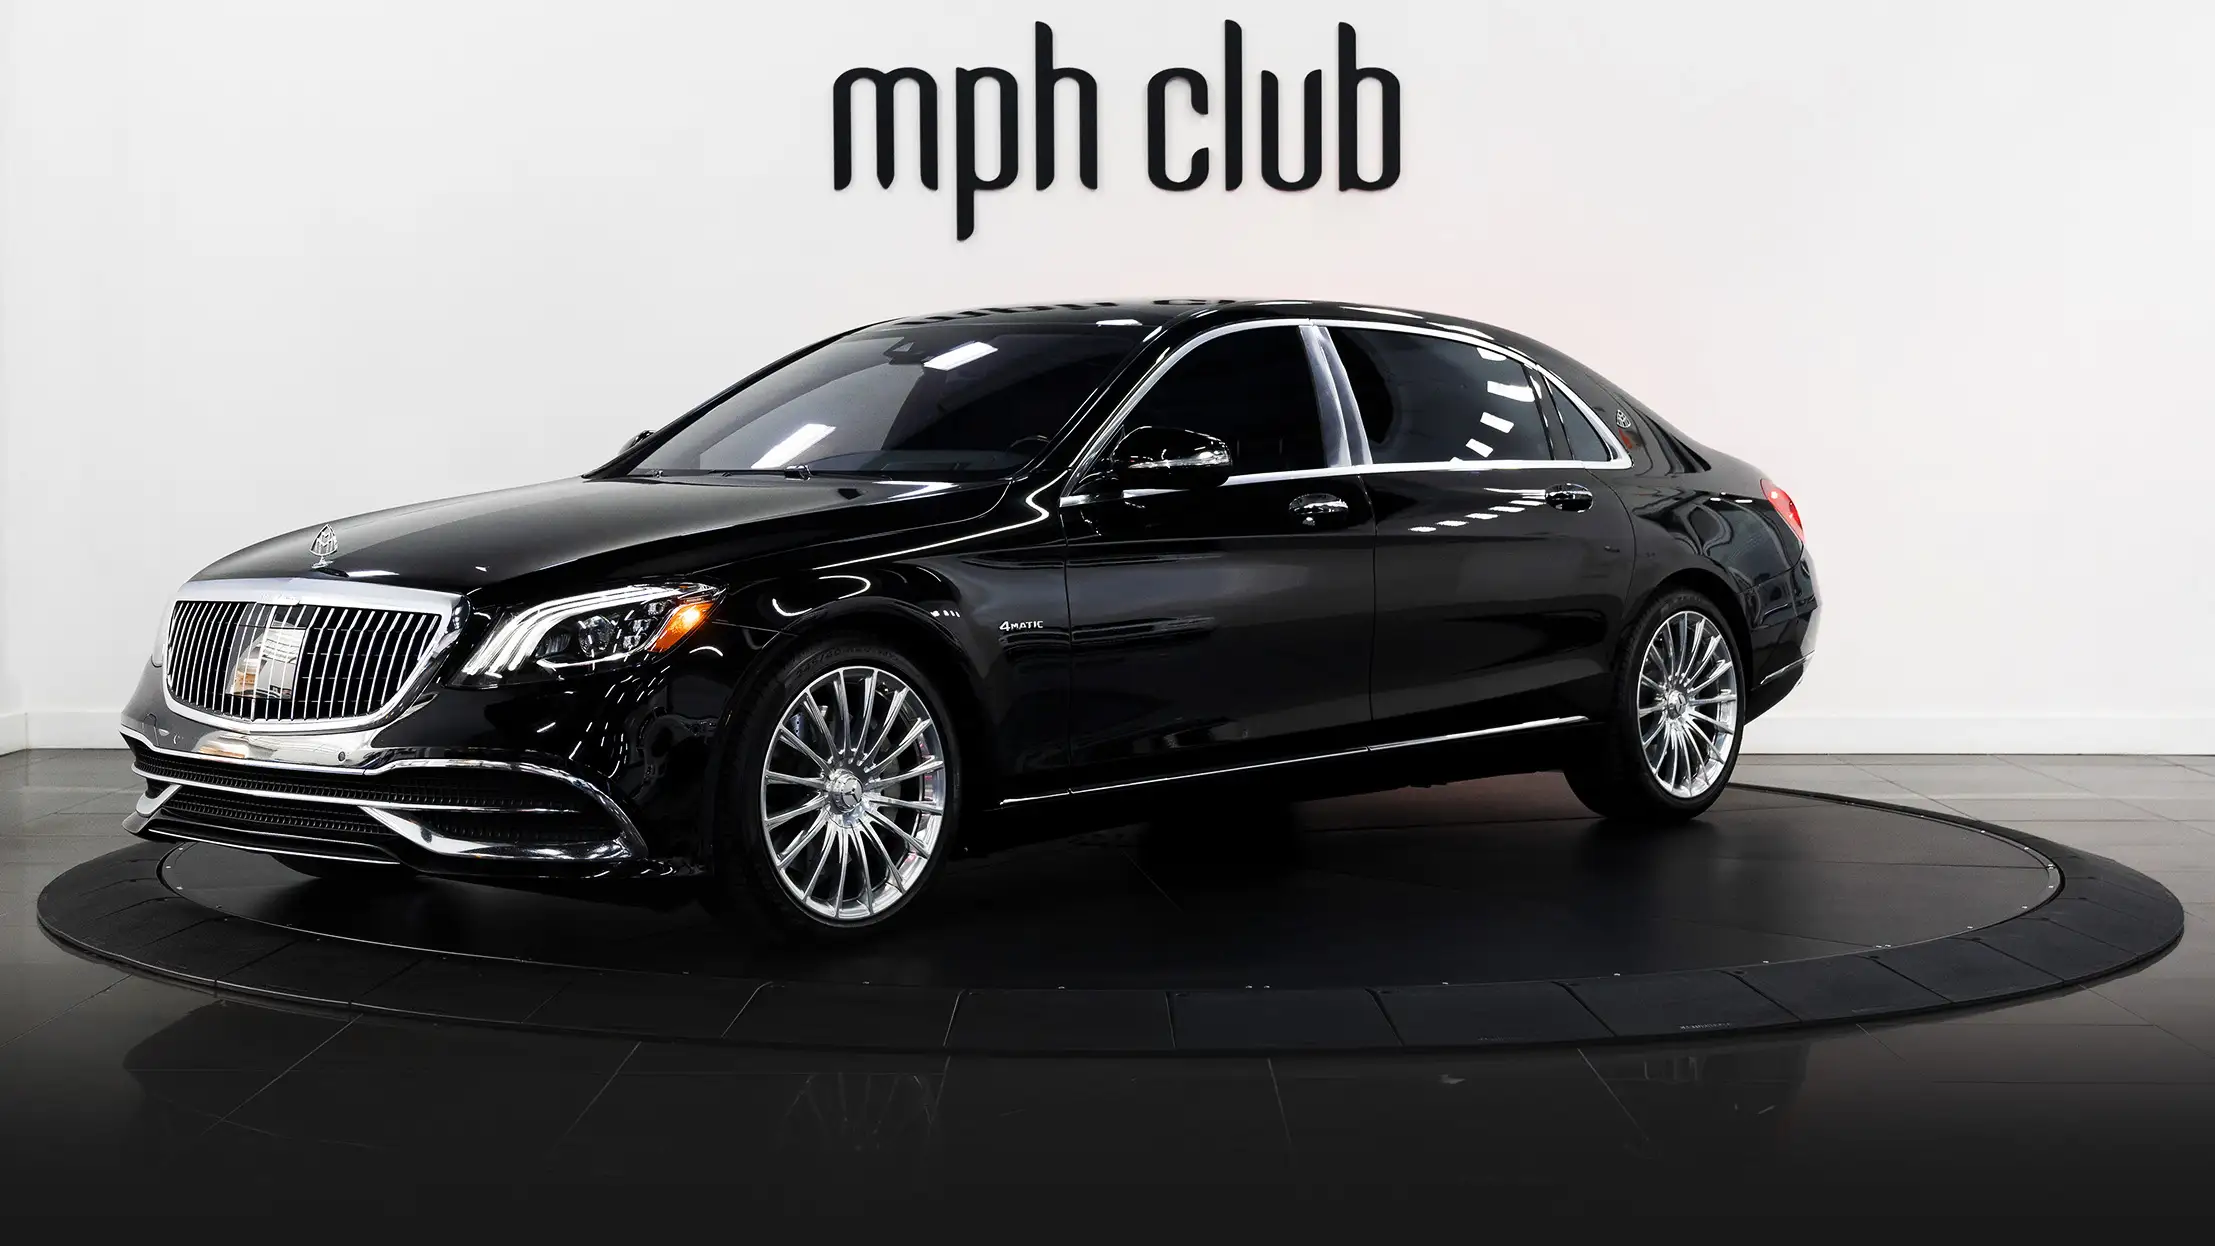 Black Mercedes Benz Maybach rental profile view mph club